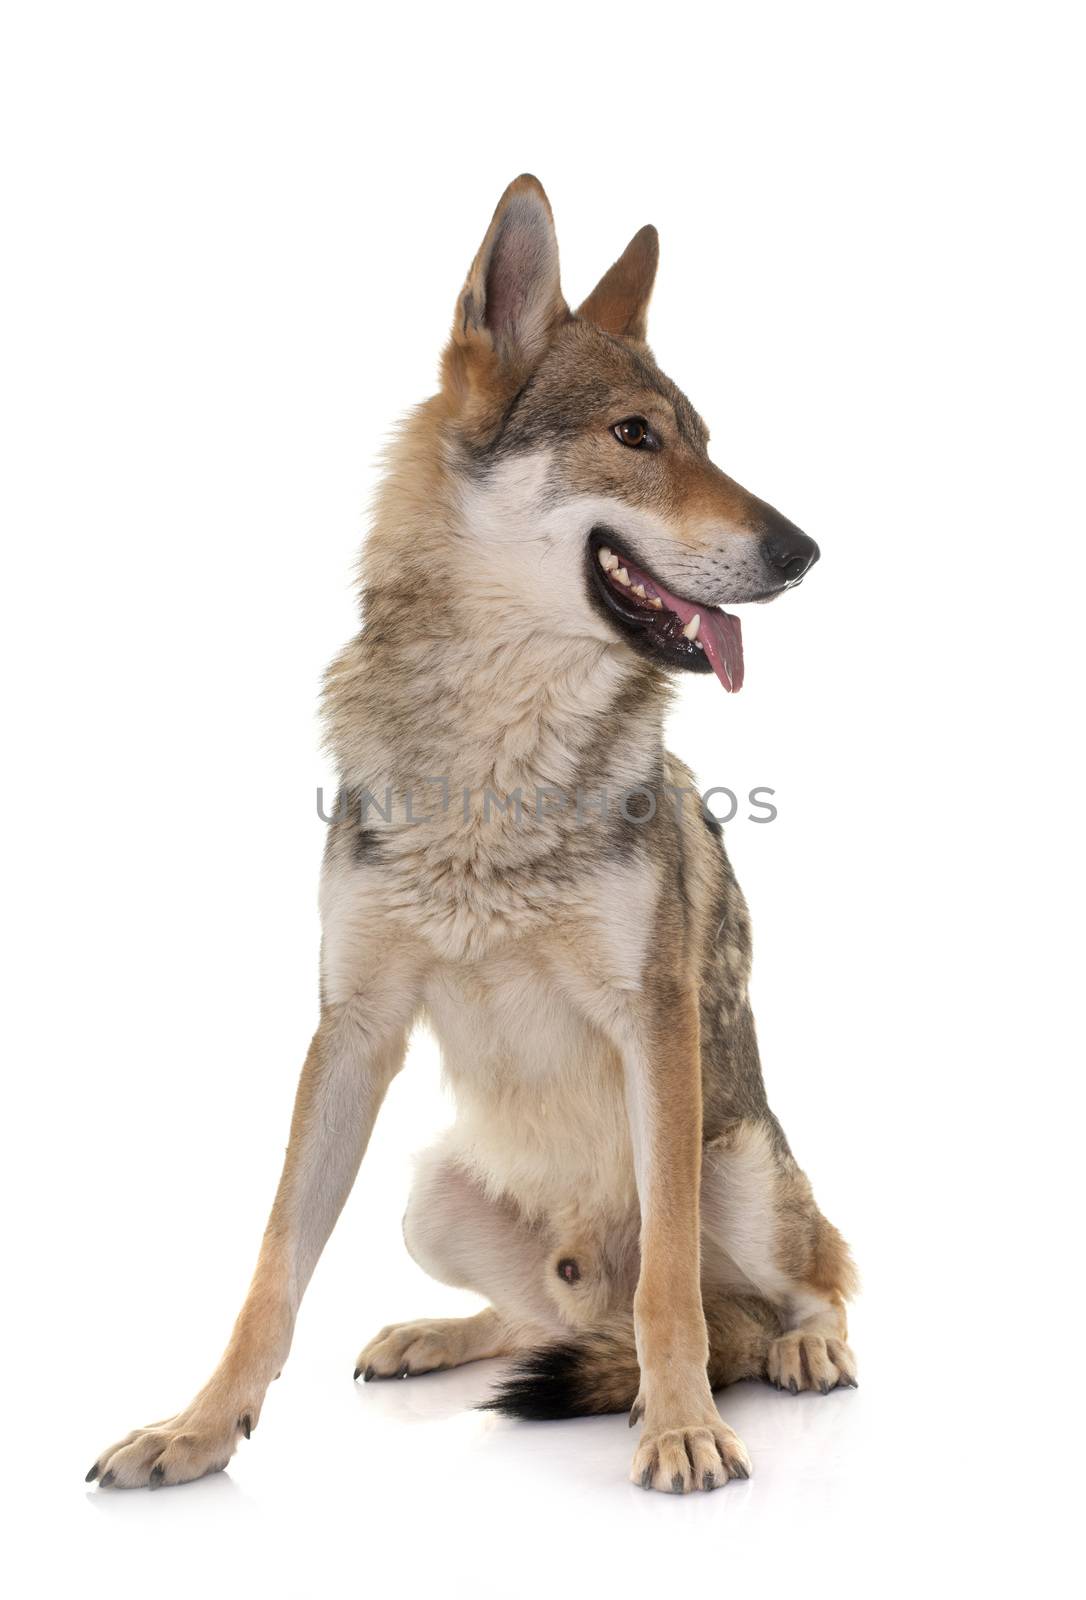  czechoslovakian wolf dog by cynoclub